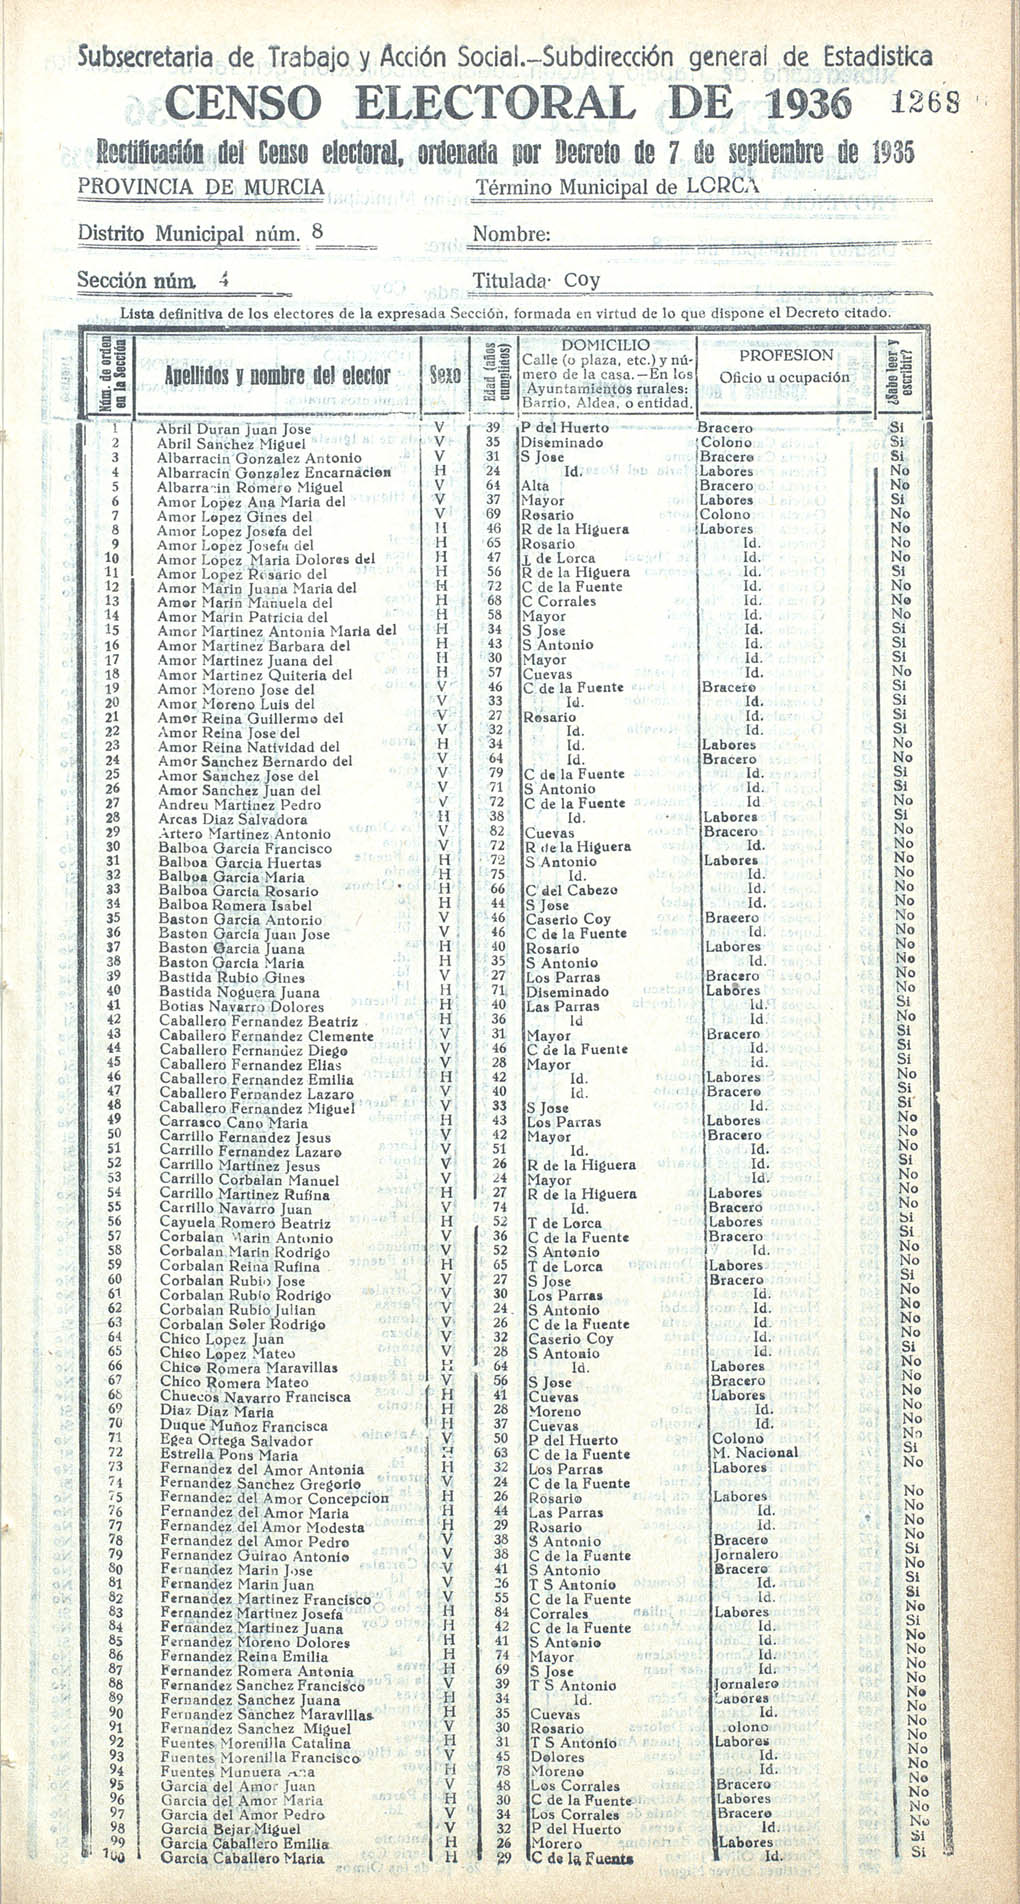 Censo electoral provincial de 1936. Lorca. Distrito 8º. Sección 4ª, Coy